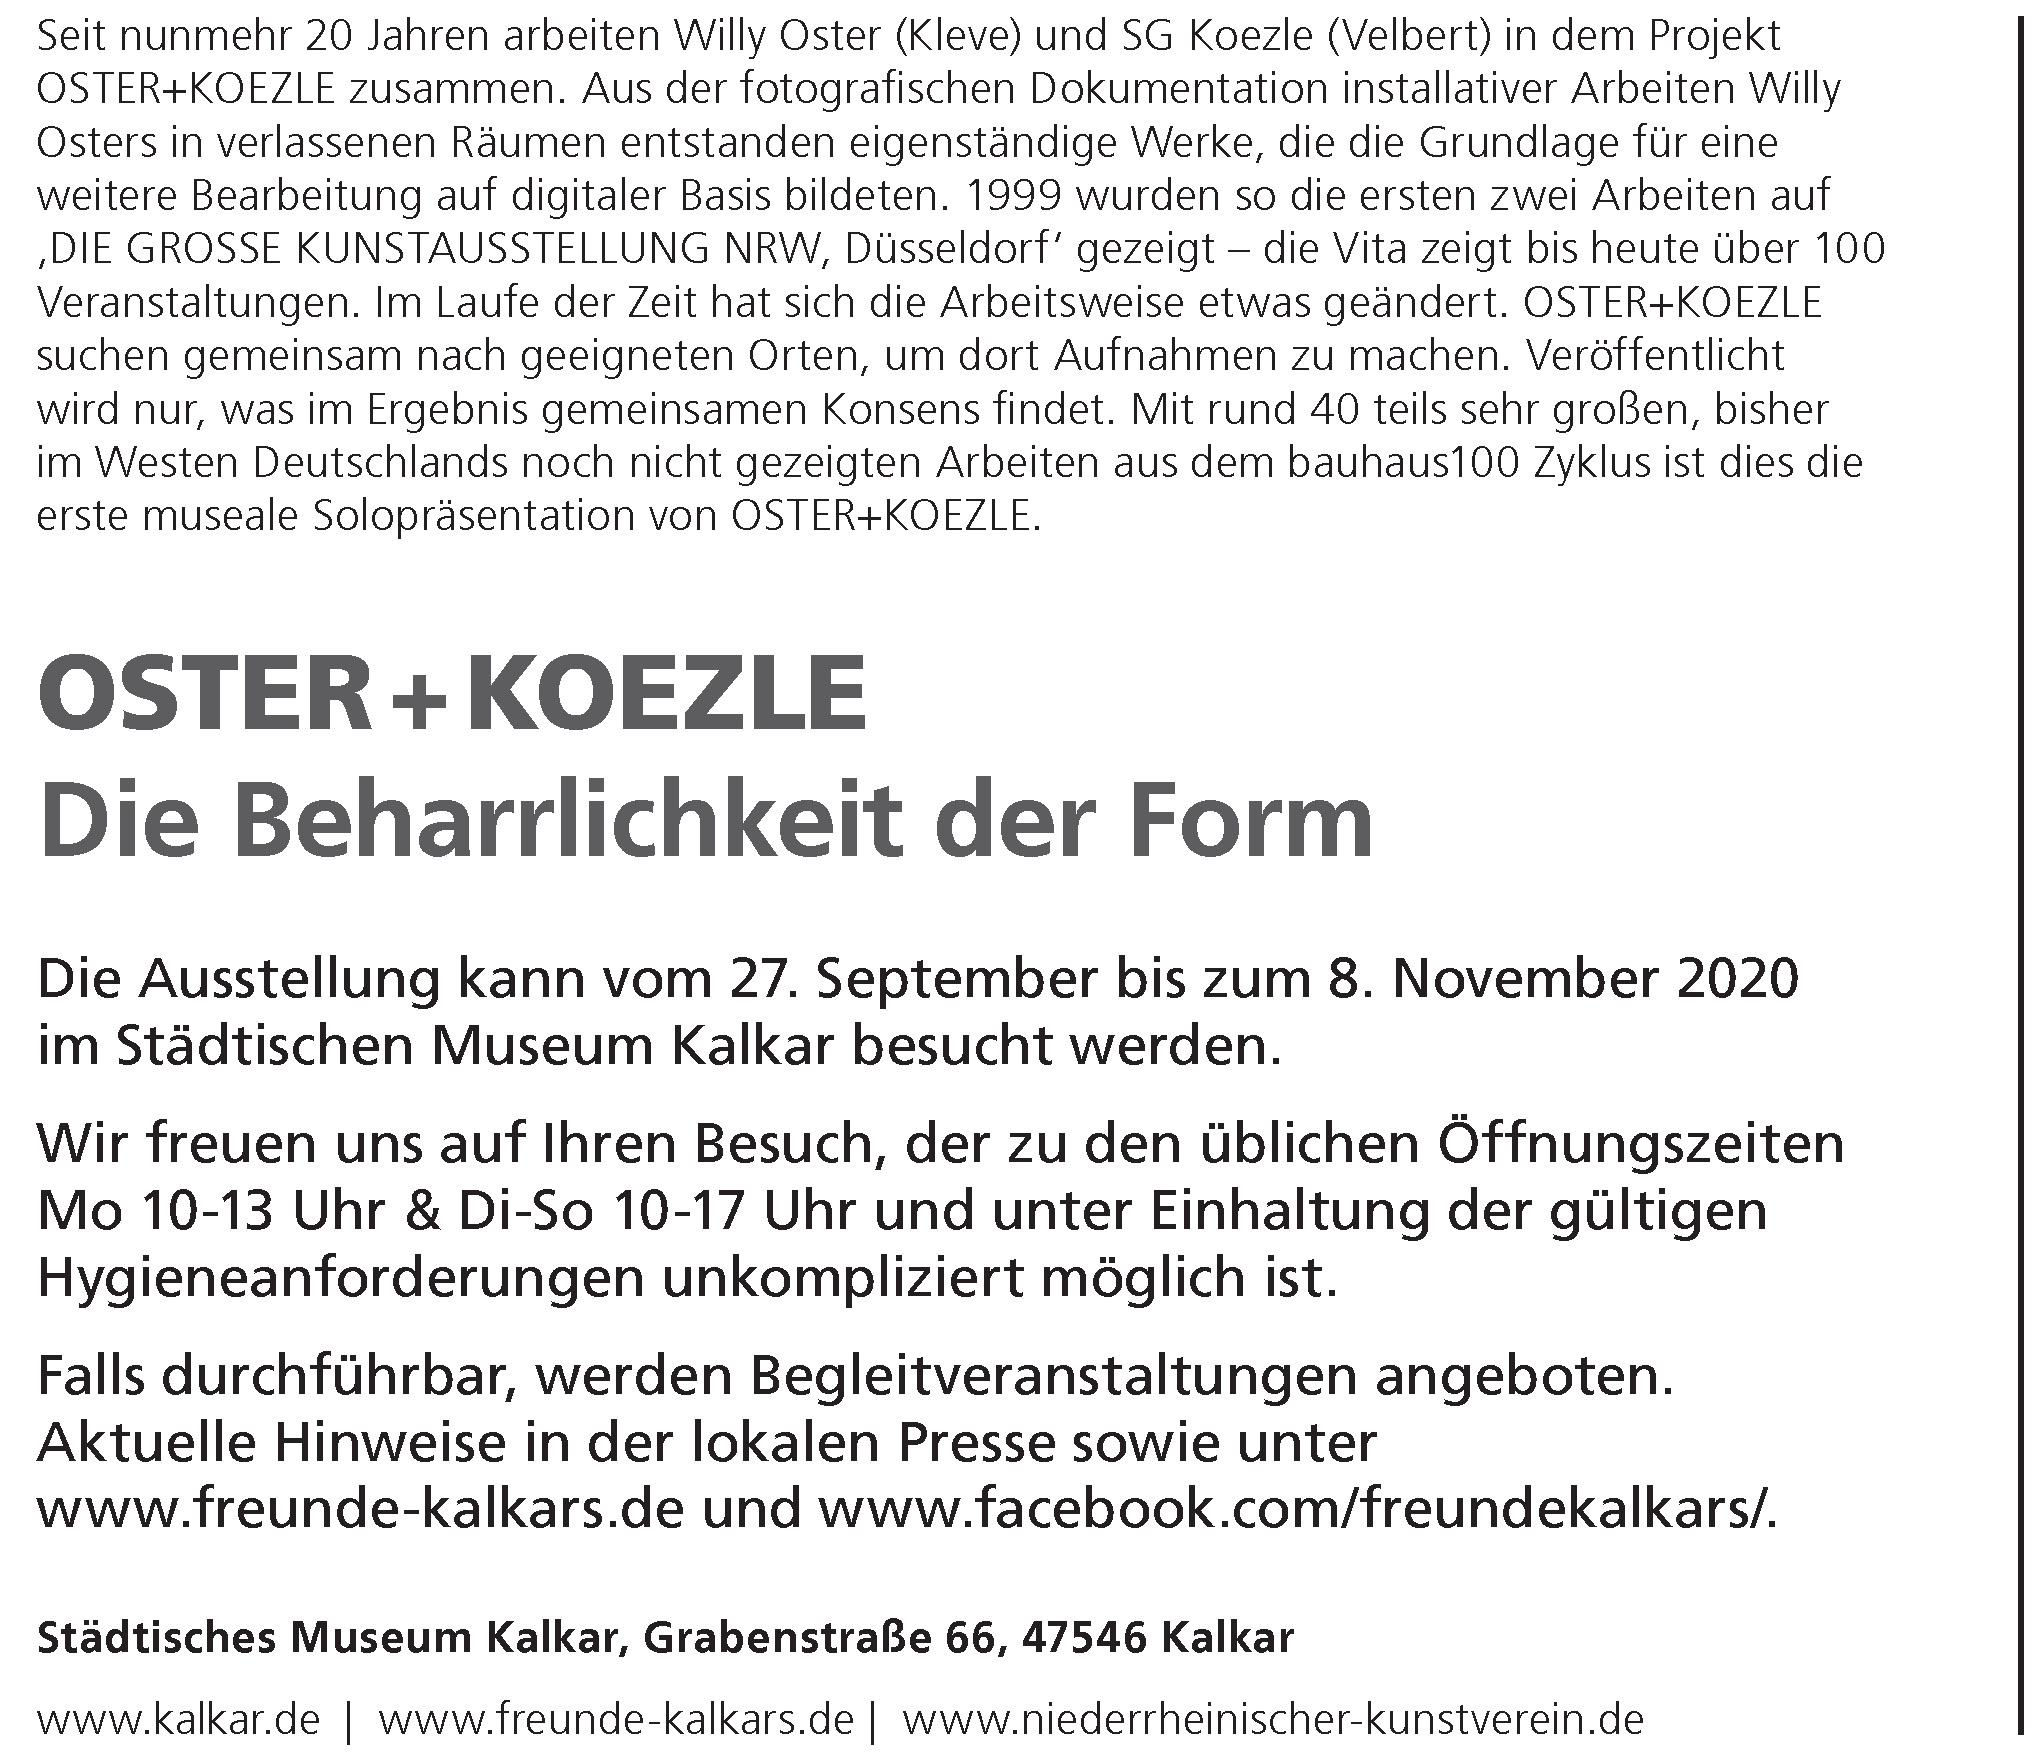 einladung_kalkar2020_oster_koezle-2